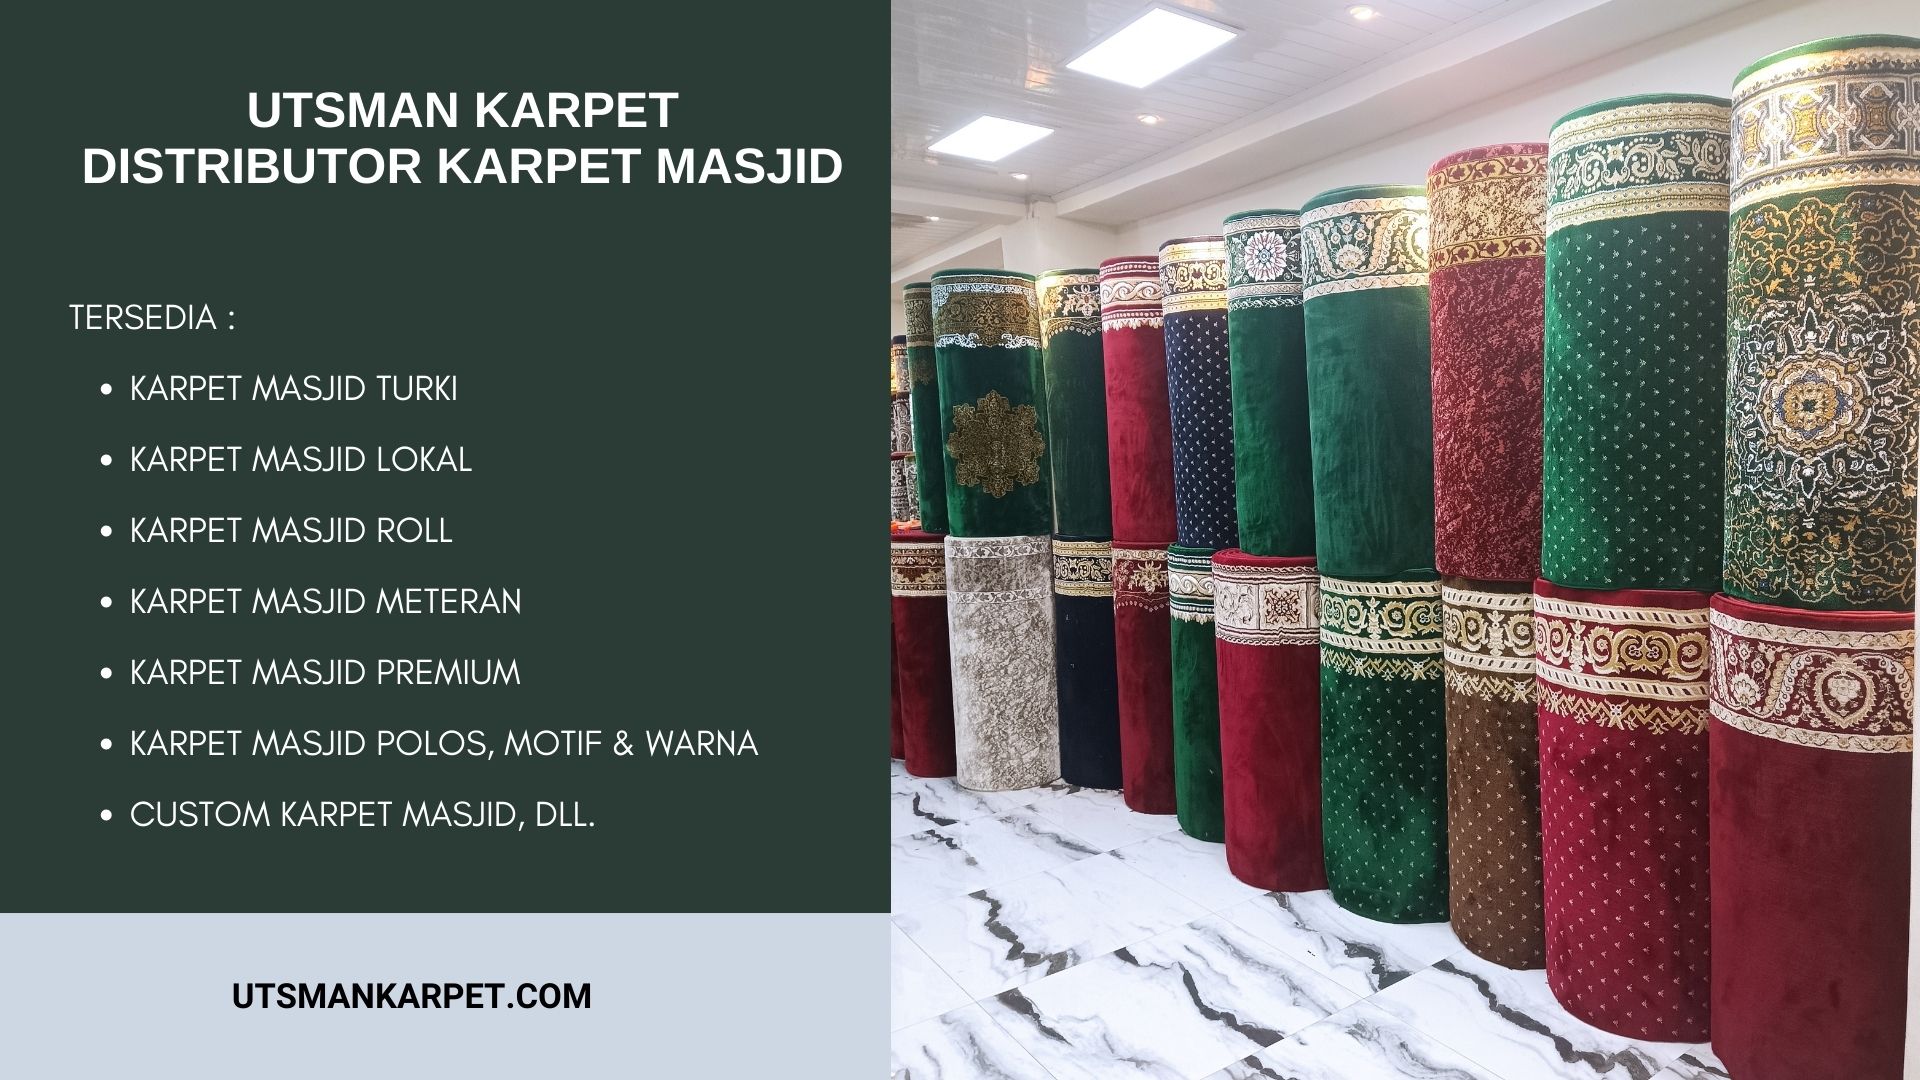 Distributor Karpet Masjid